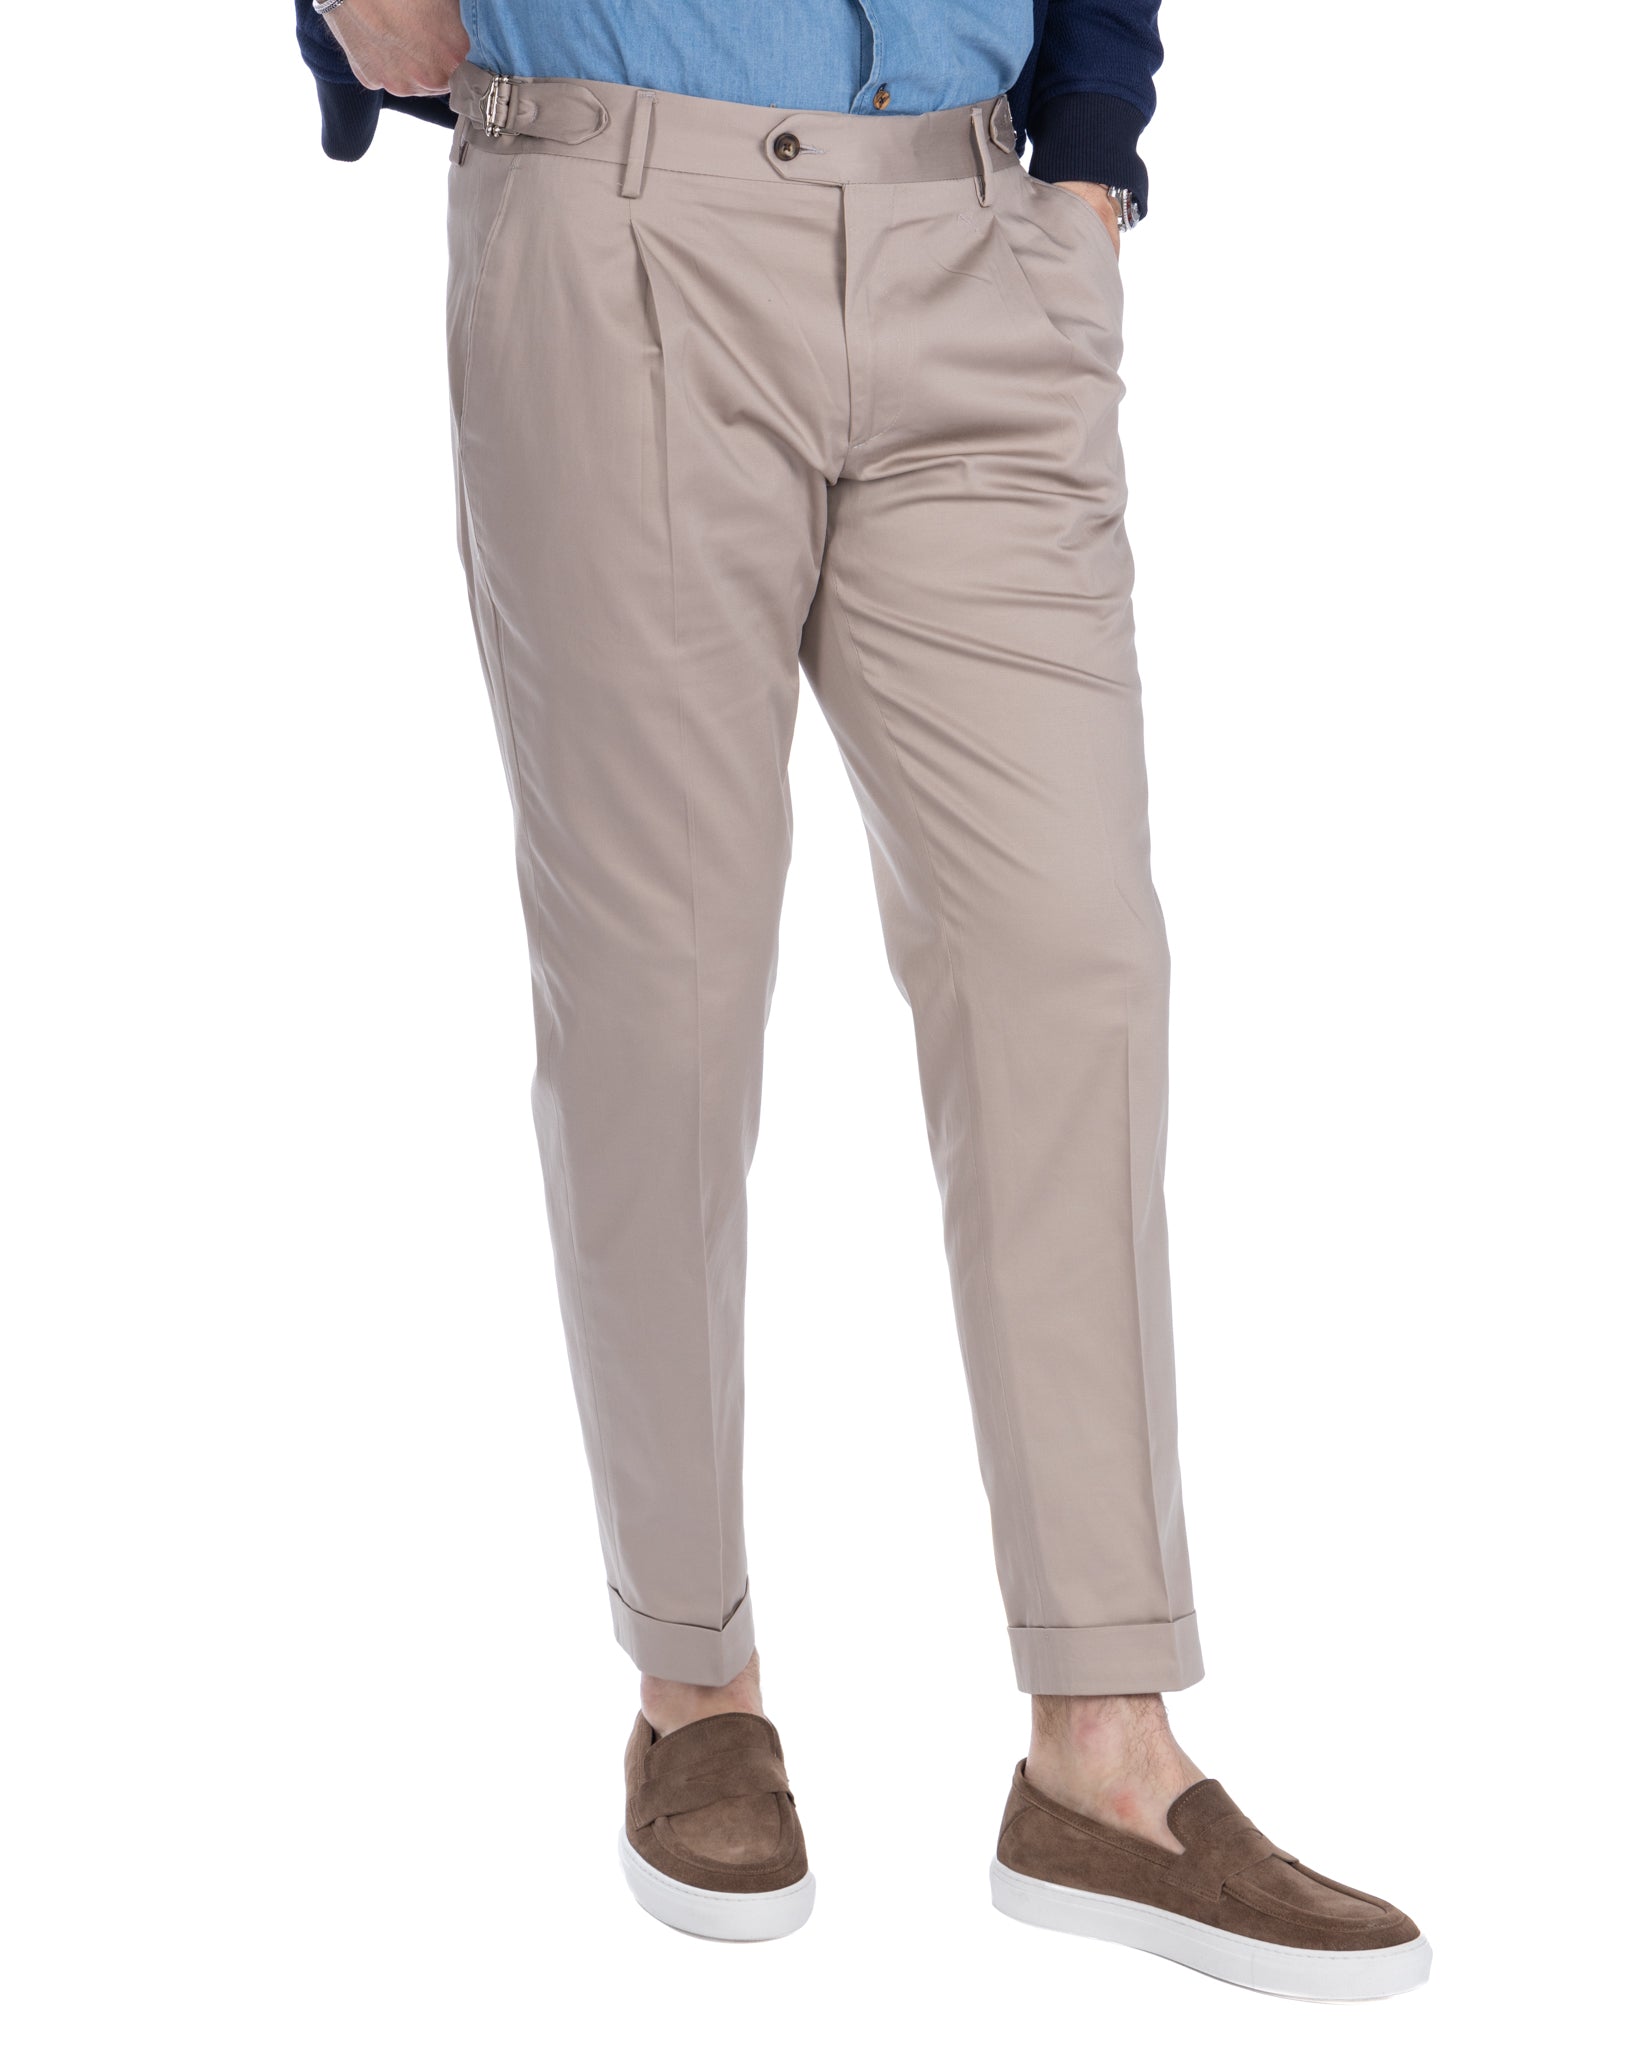 James - pantalon beige taille haute à boucles